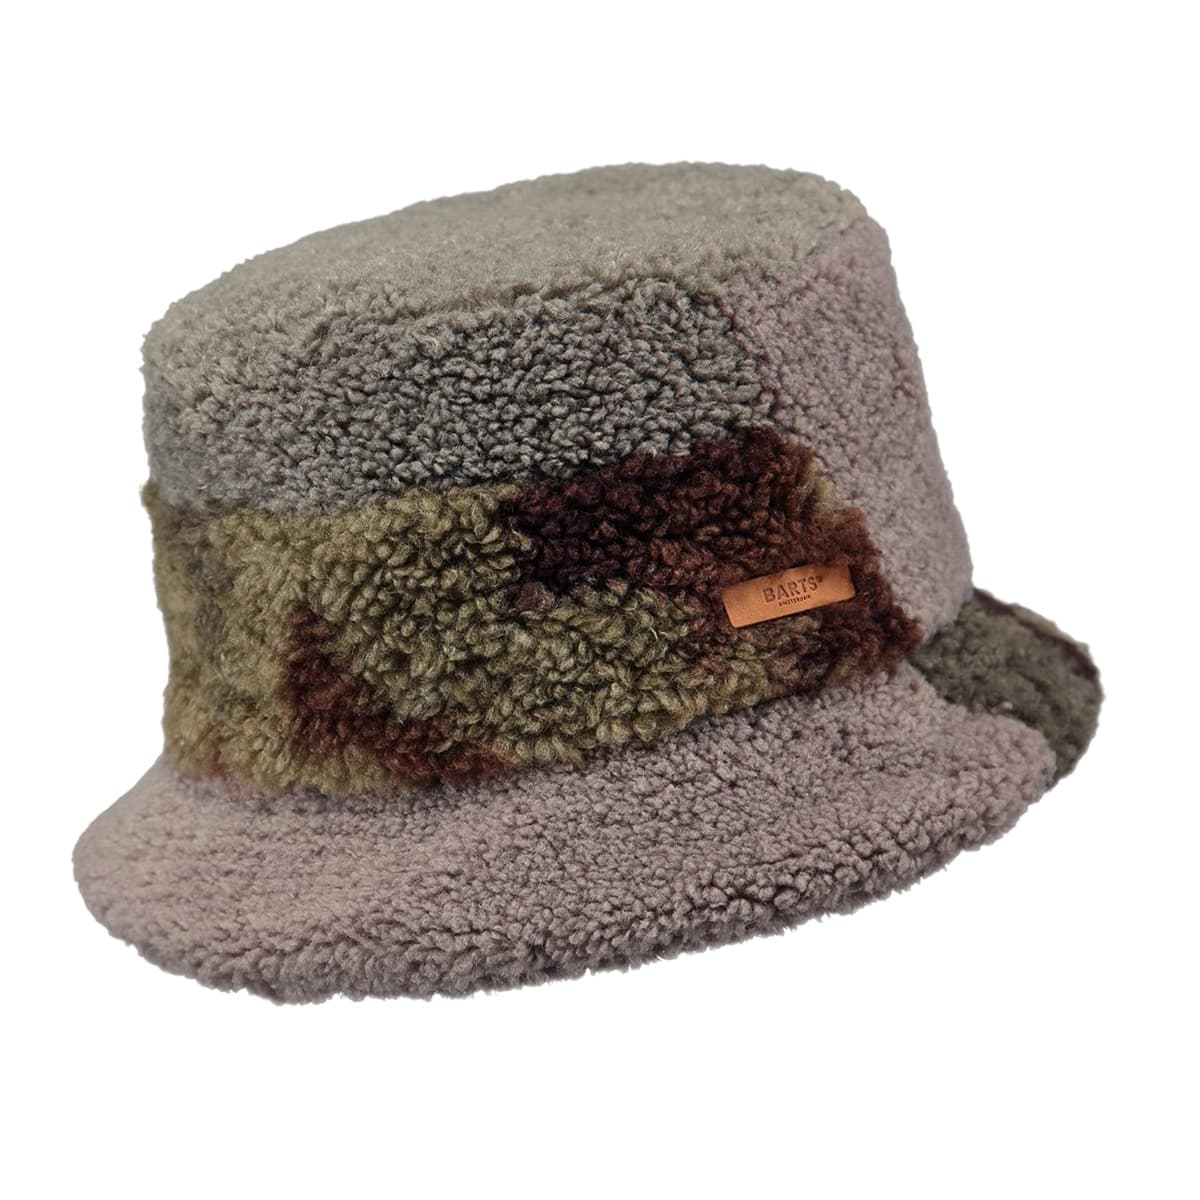 BARTS | Stargazer sowie Handschuhe, Hüte, Fischerhut - Damen Hat Mützen, Teddystoff aus für --> Hutstuebele Schals